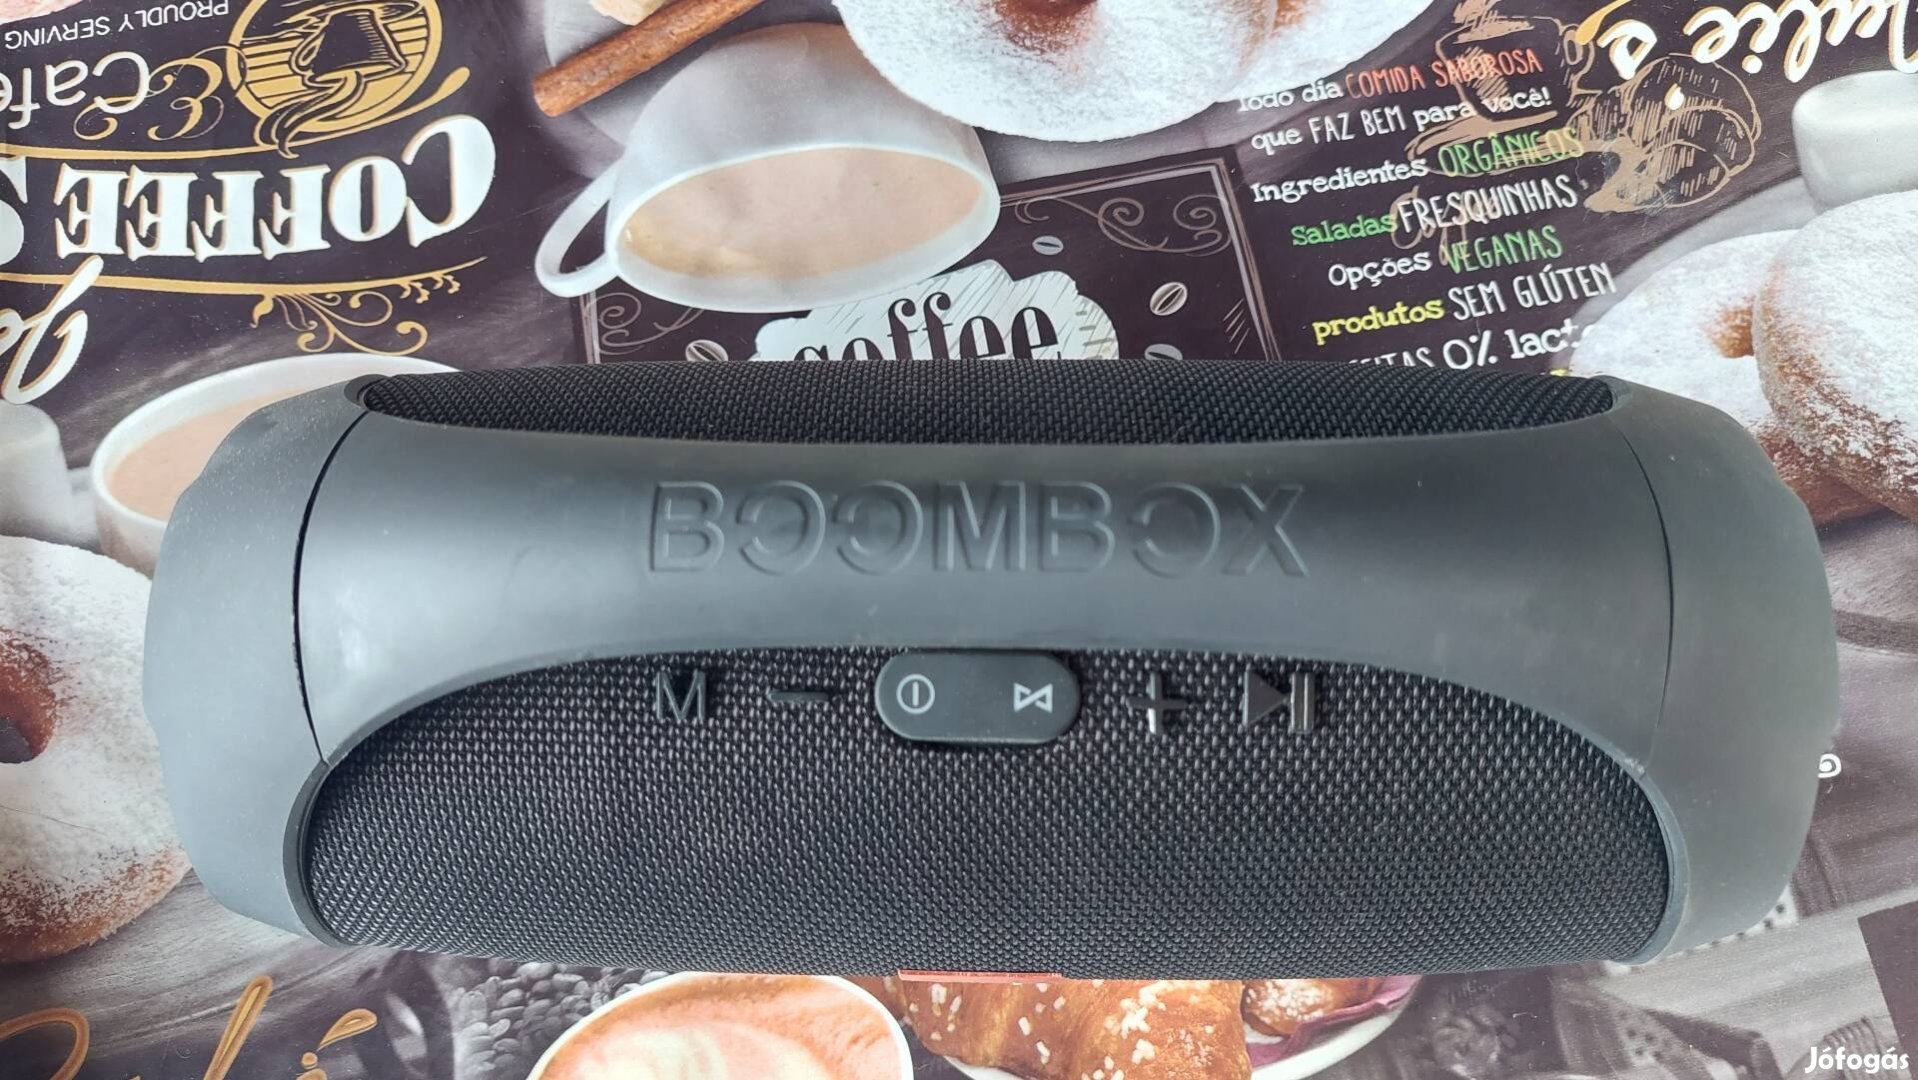 Eladó Bluetooth boombox zenegép hangszóró!